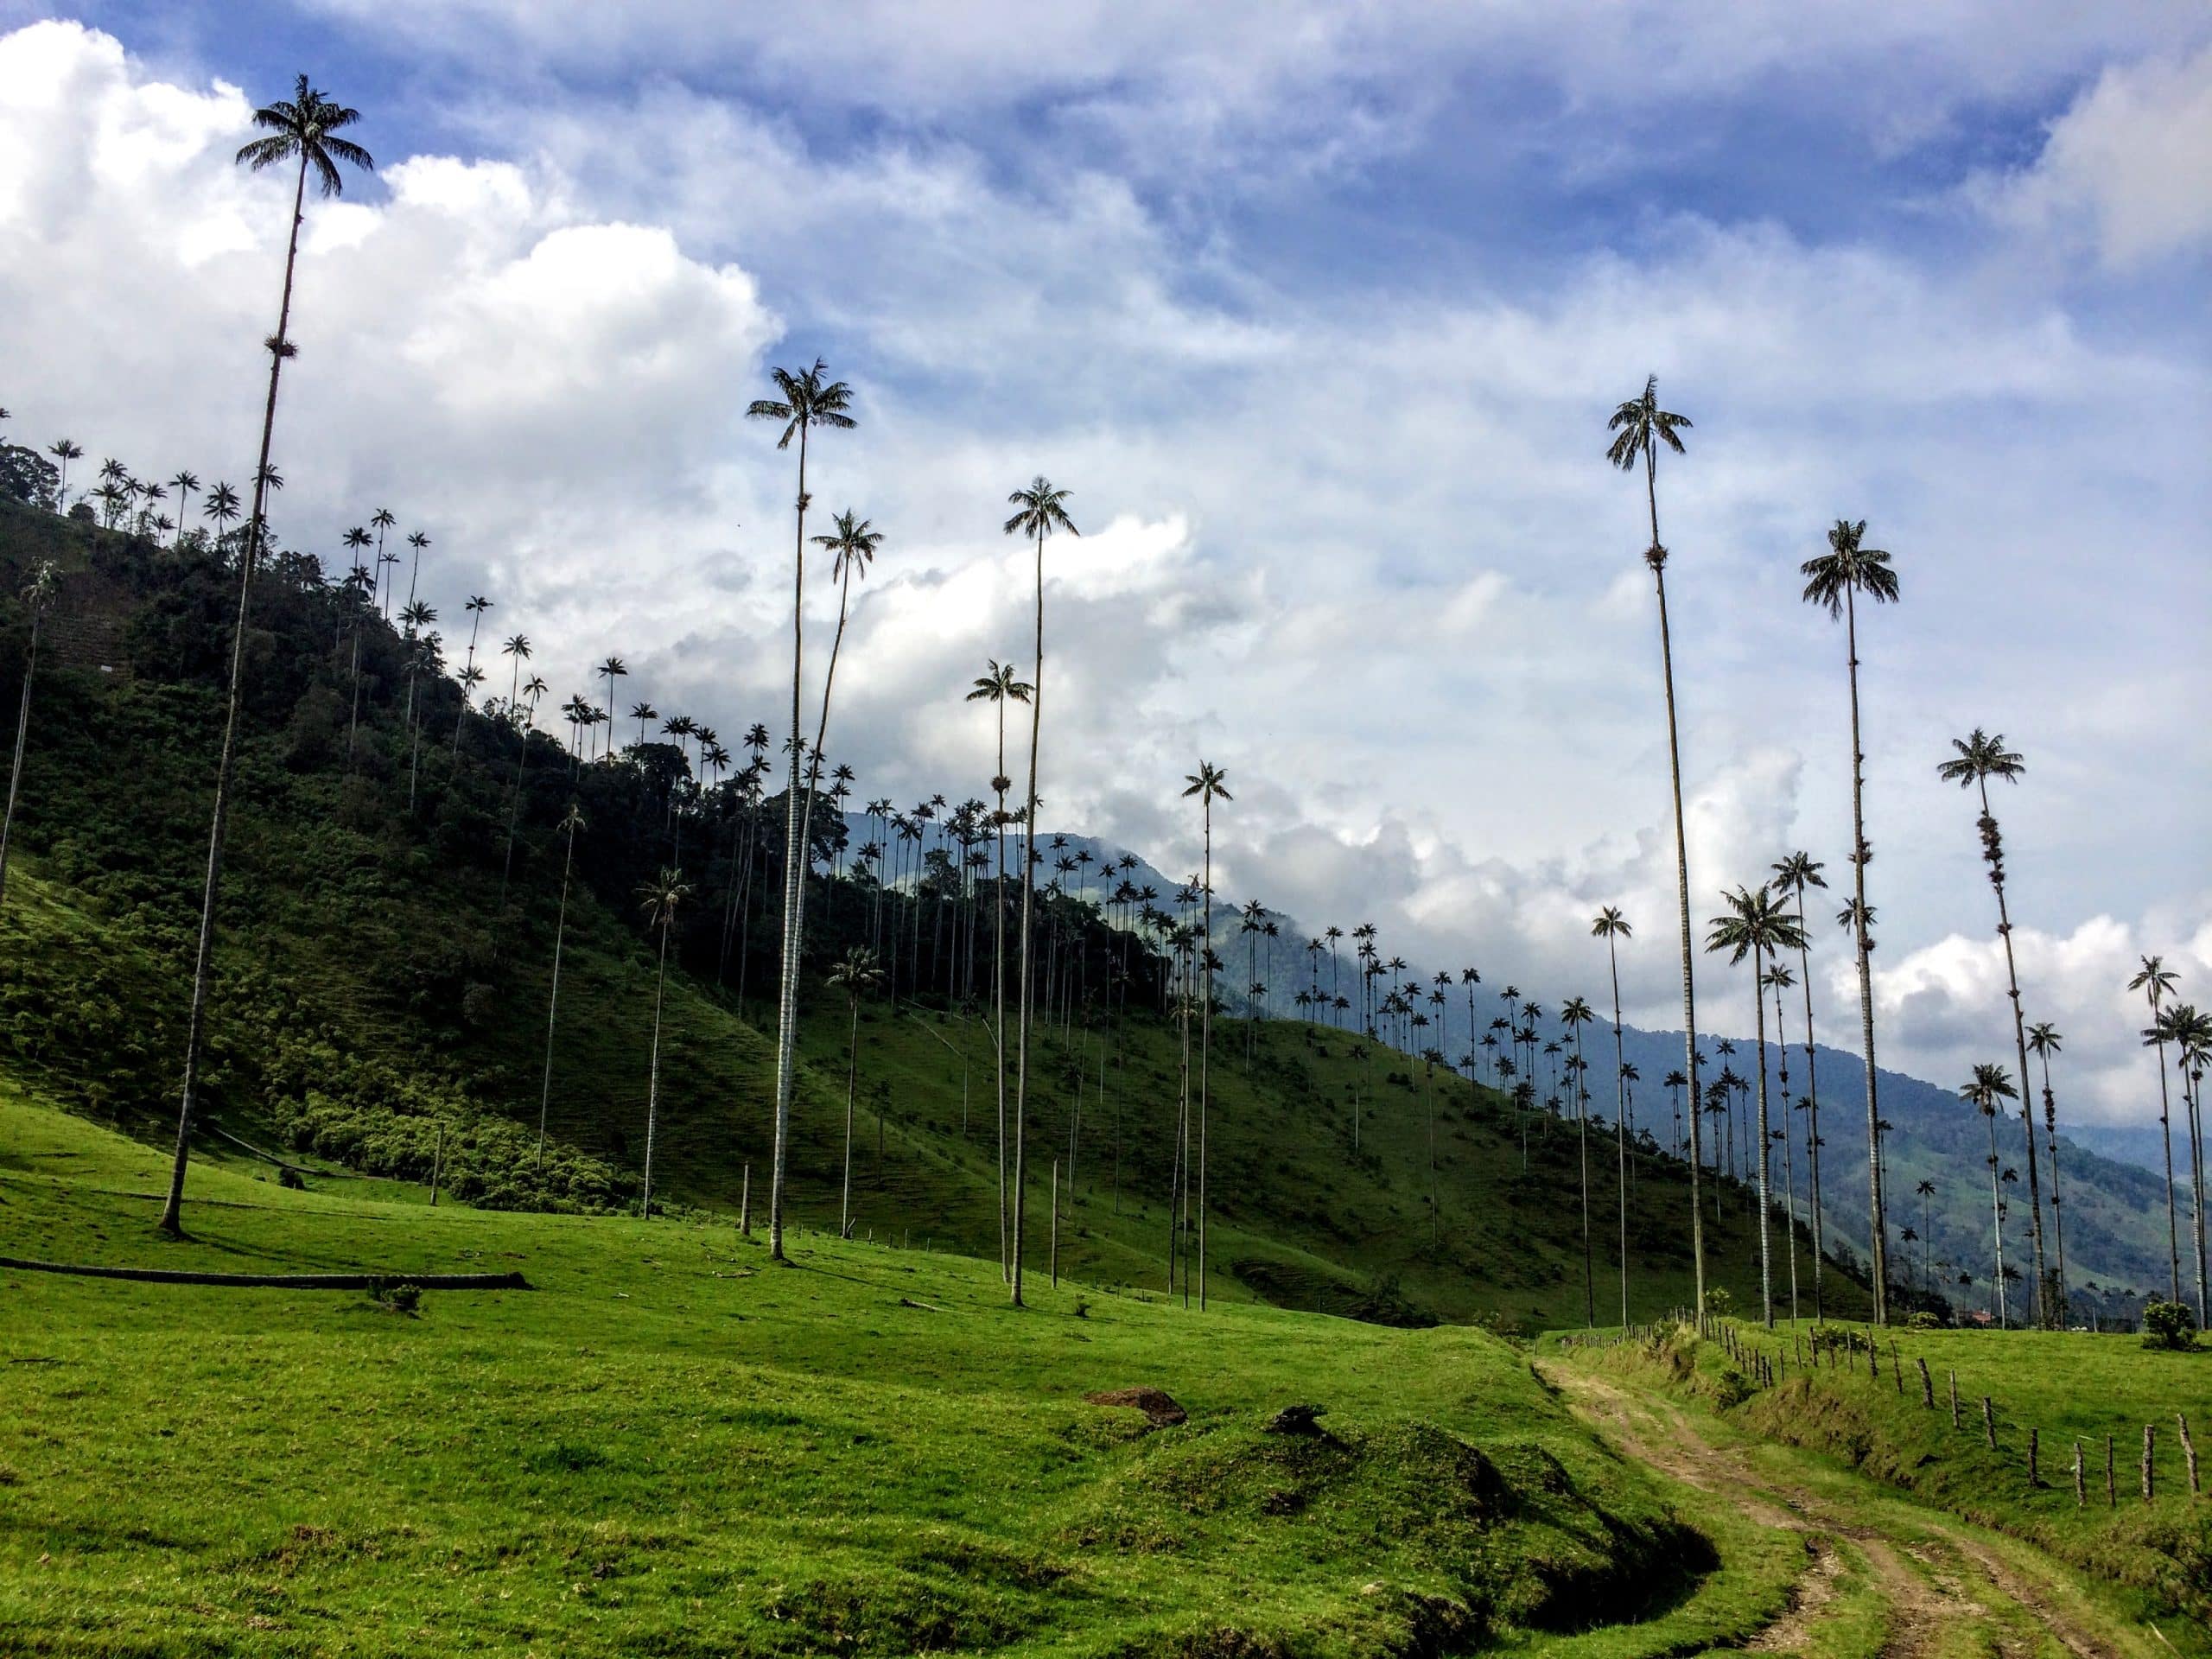 Valle de Cocora - Reise durch Kolumbien in 3 Wochen